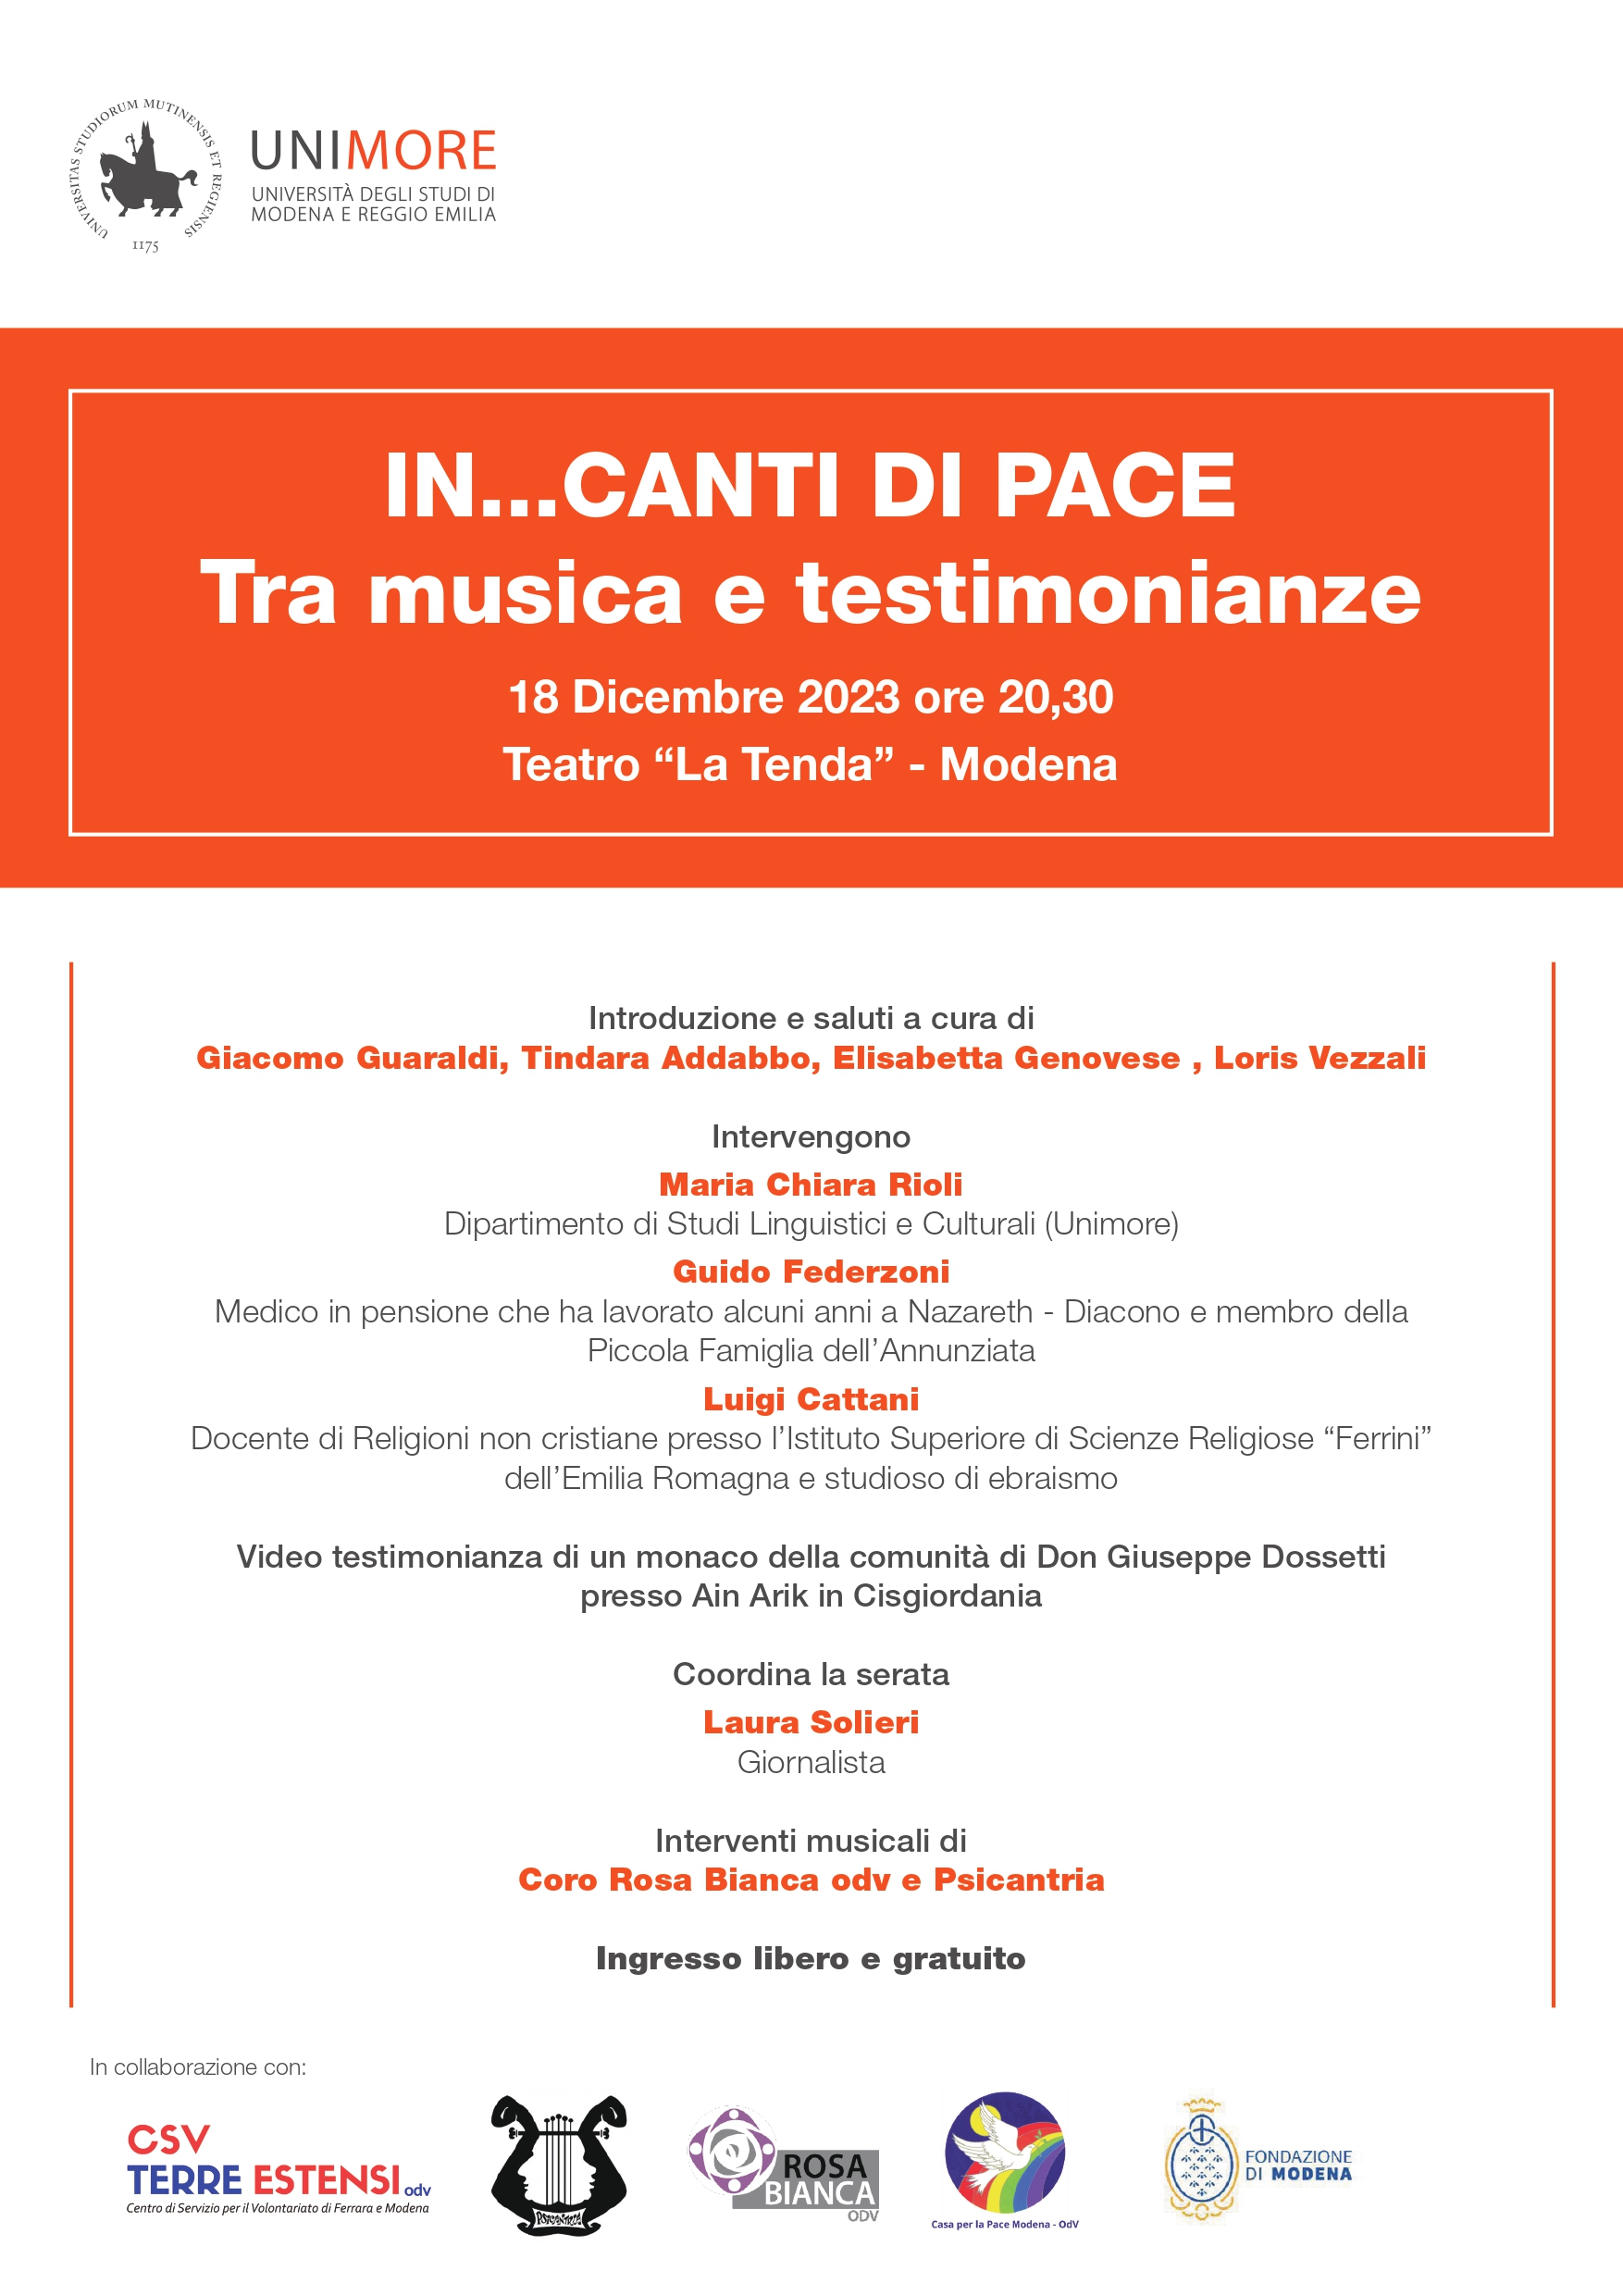 IN… CANTI DI PACE - TRA MUSICA E TESTIMONIANZE